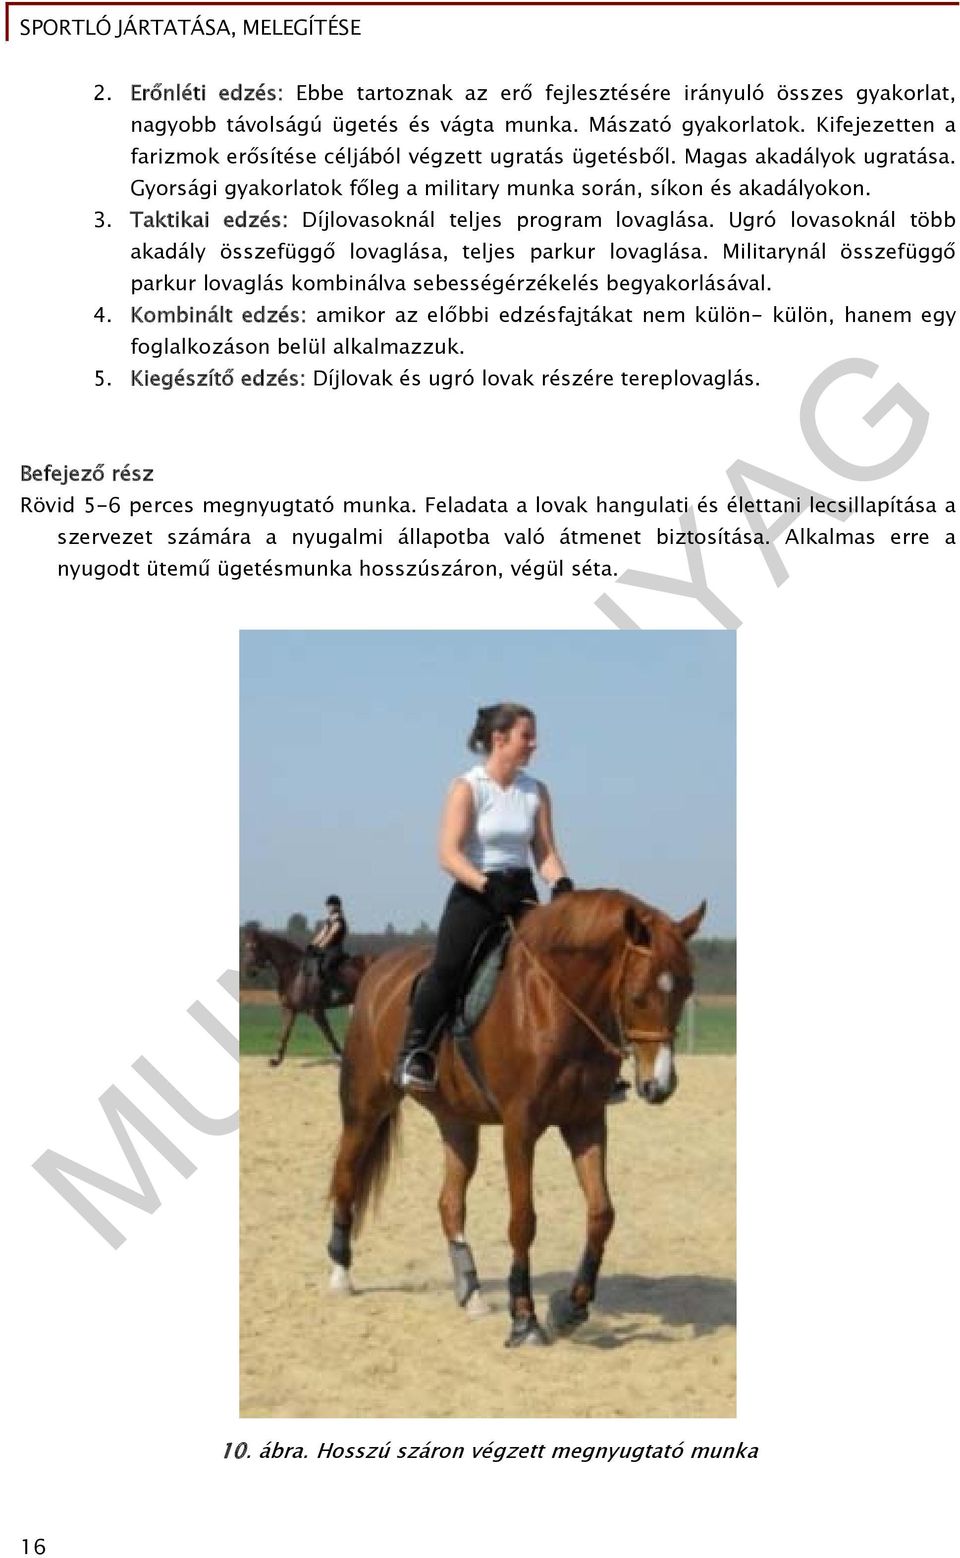 Taktikai edzés: Díjlovasoknál teljes program lovaglása. Ugró lovasoknál több akadály összefüggő lovaglása, teljes parkur lovaglása.